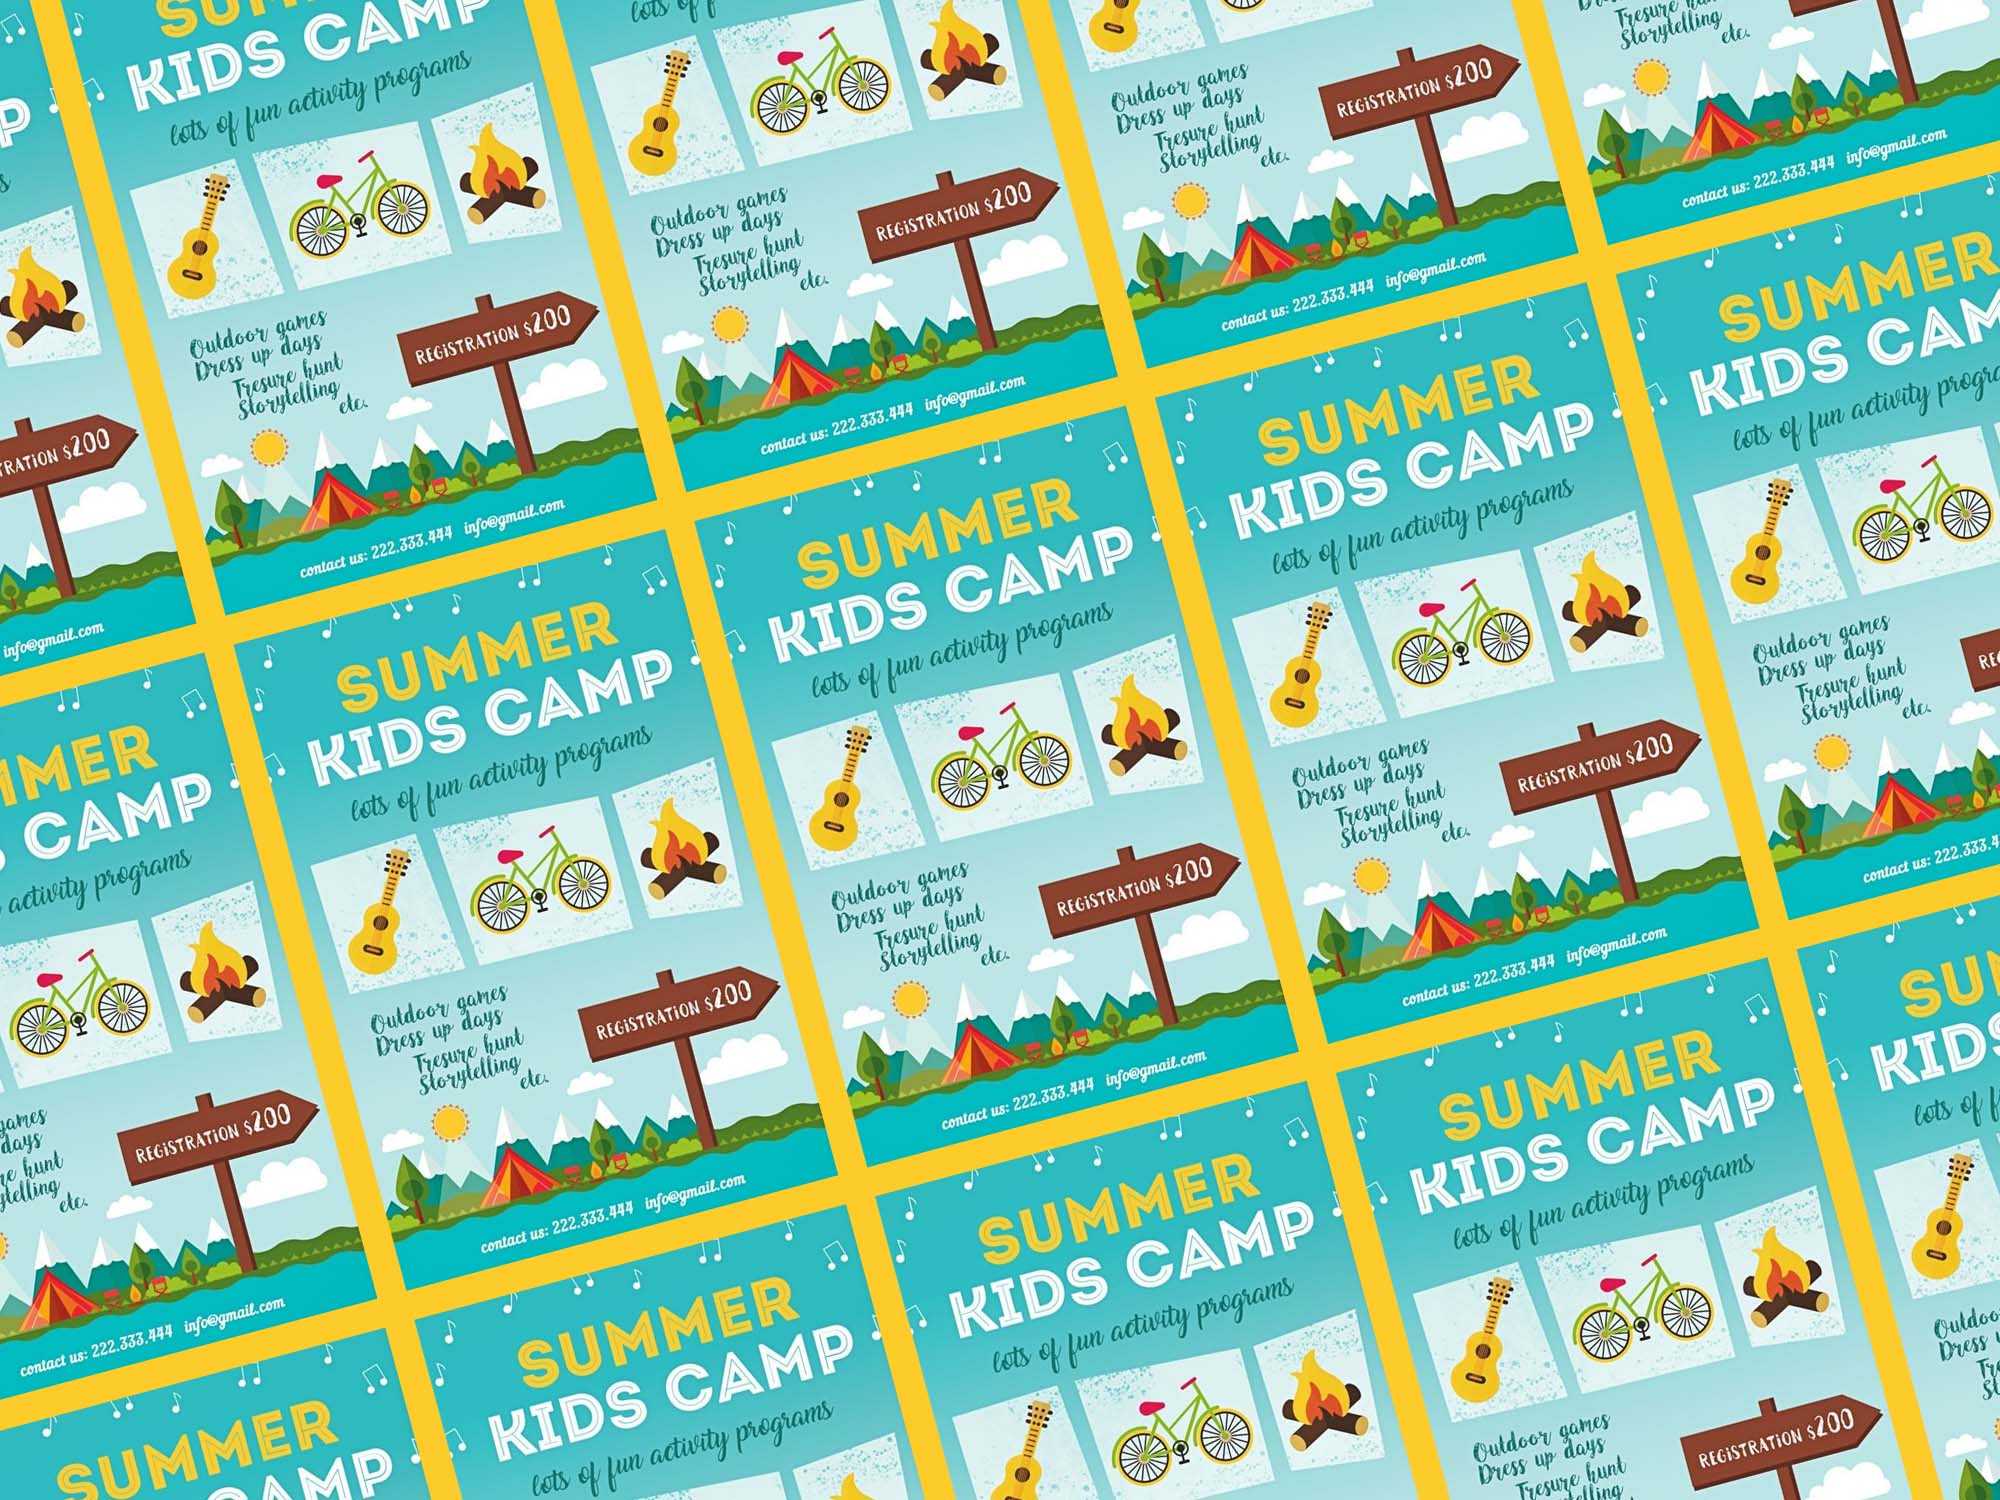 Free Summer Kids Camp Flyer Template (Psd) Regarding Summer Camp Brochure Template Free Download